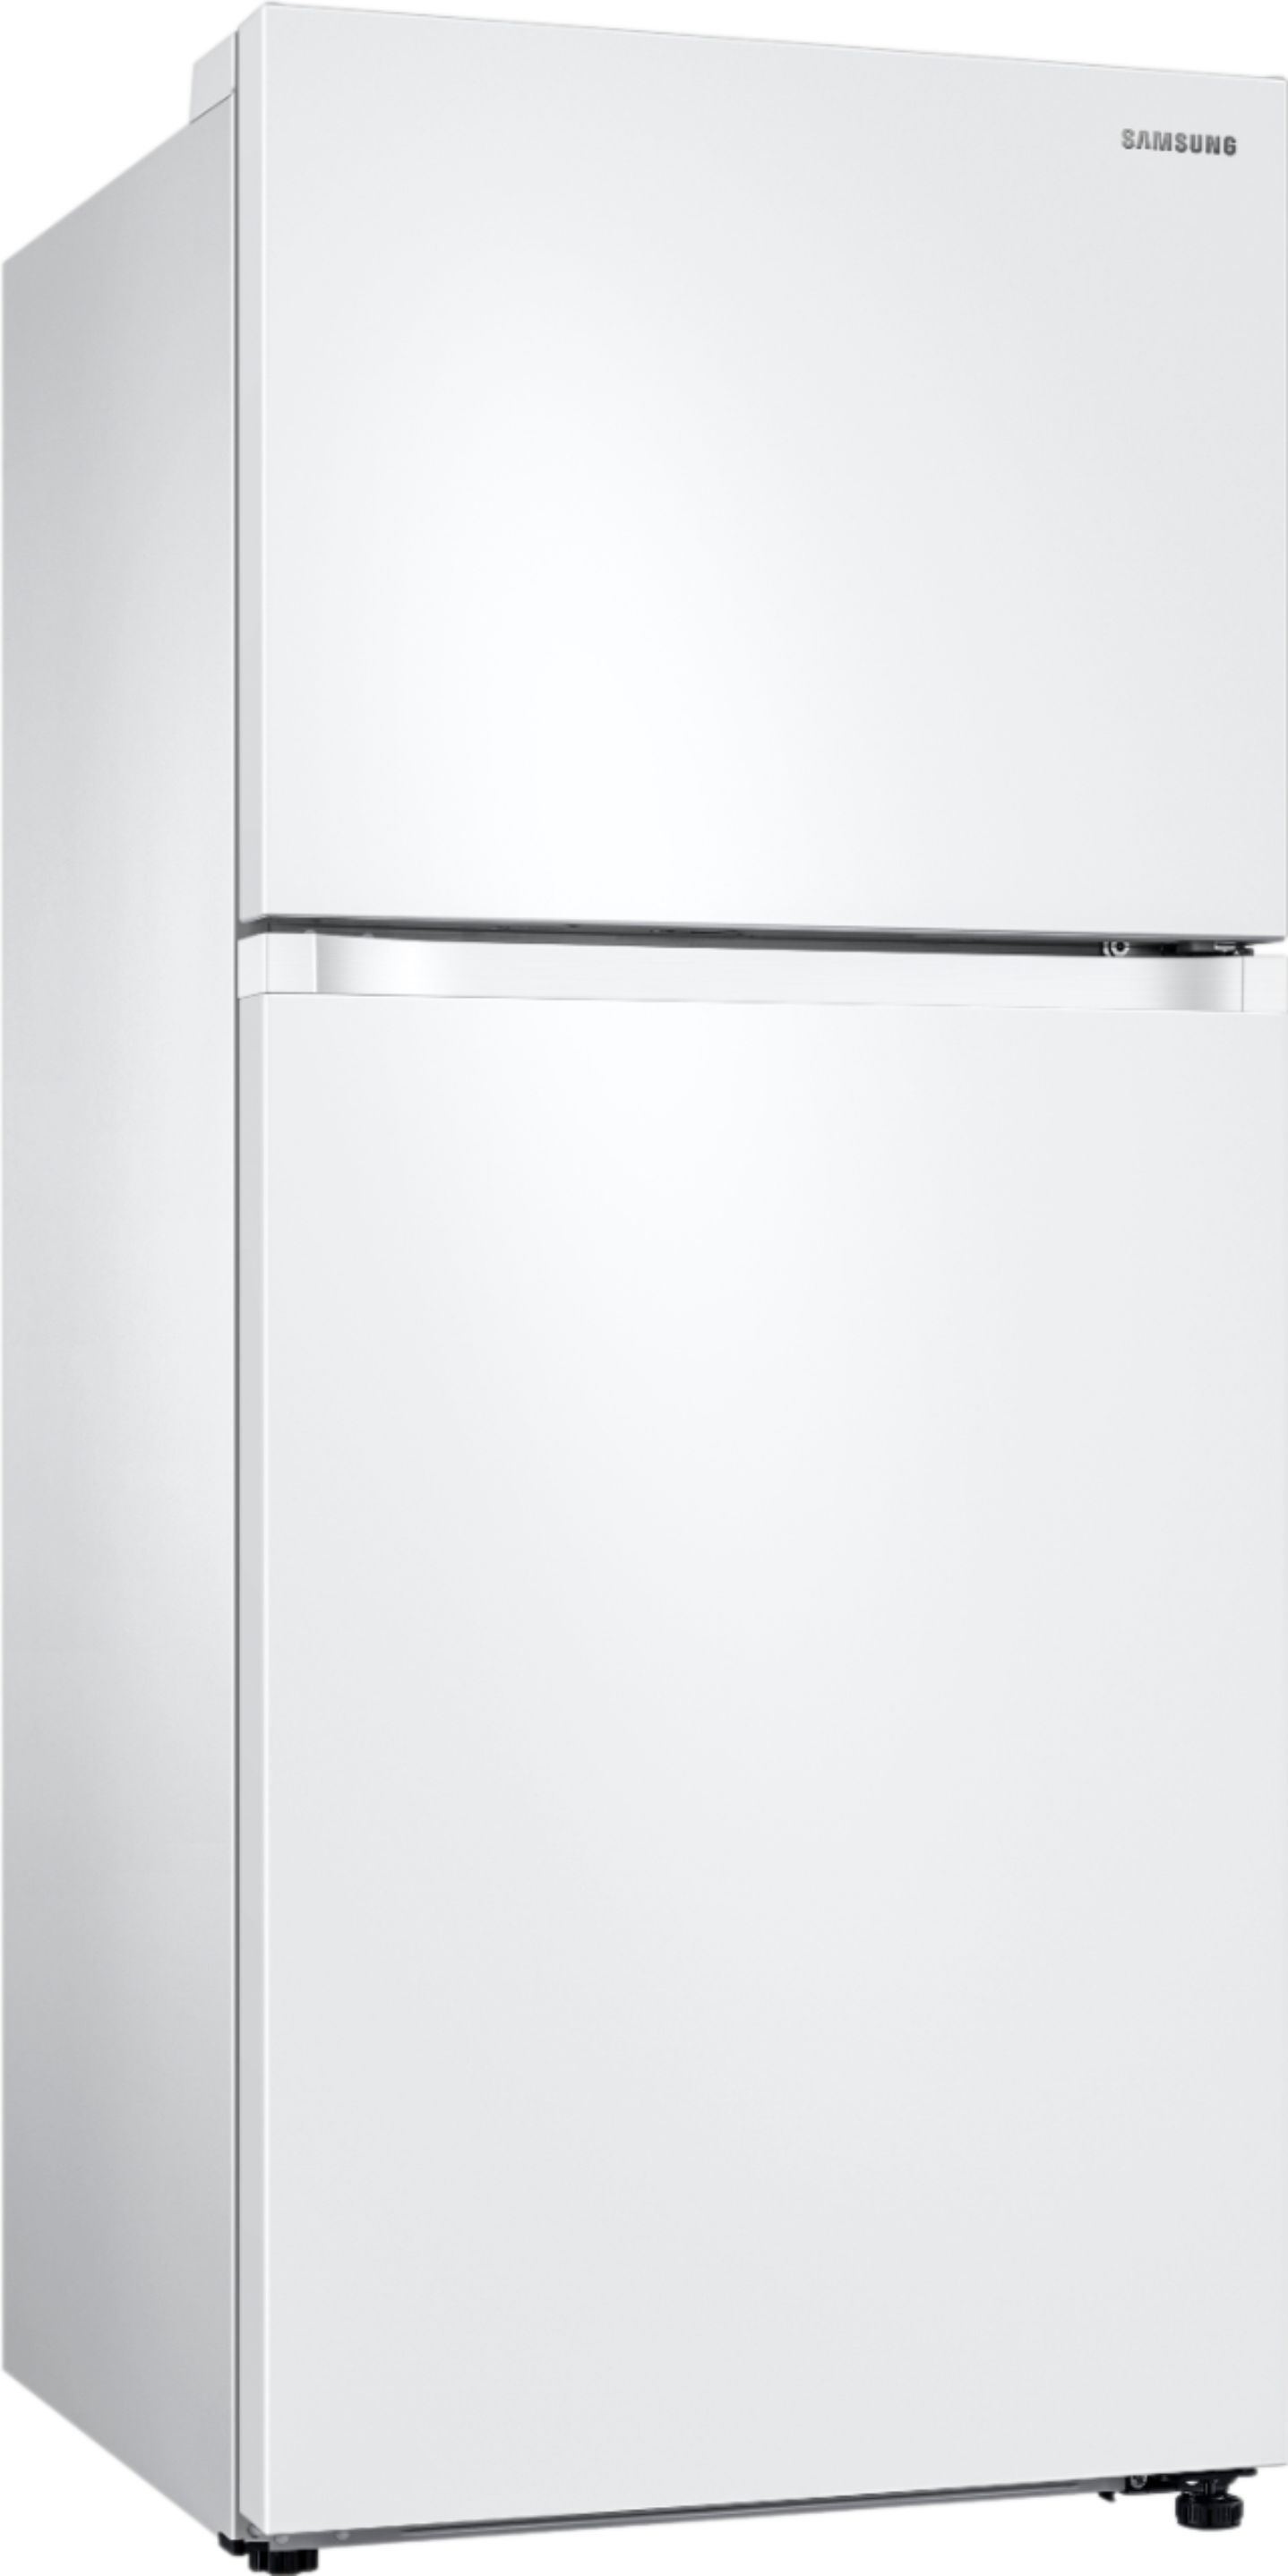 Angle View: Samsung - 17.6 Cu. Ft. Top-Freezer Refrigerator - White